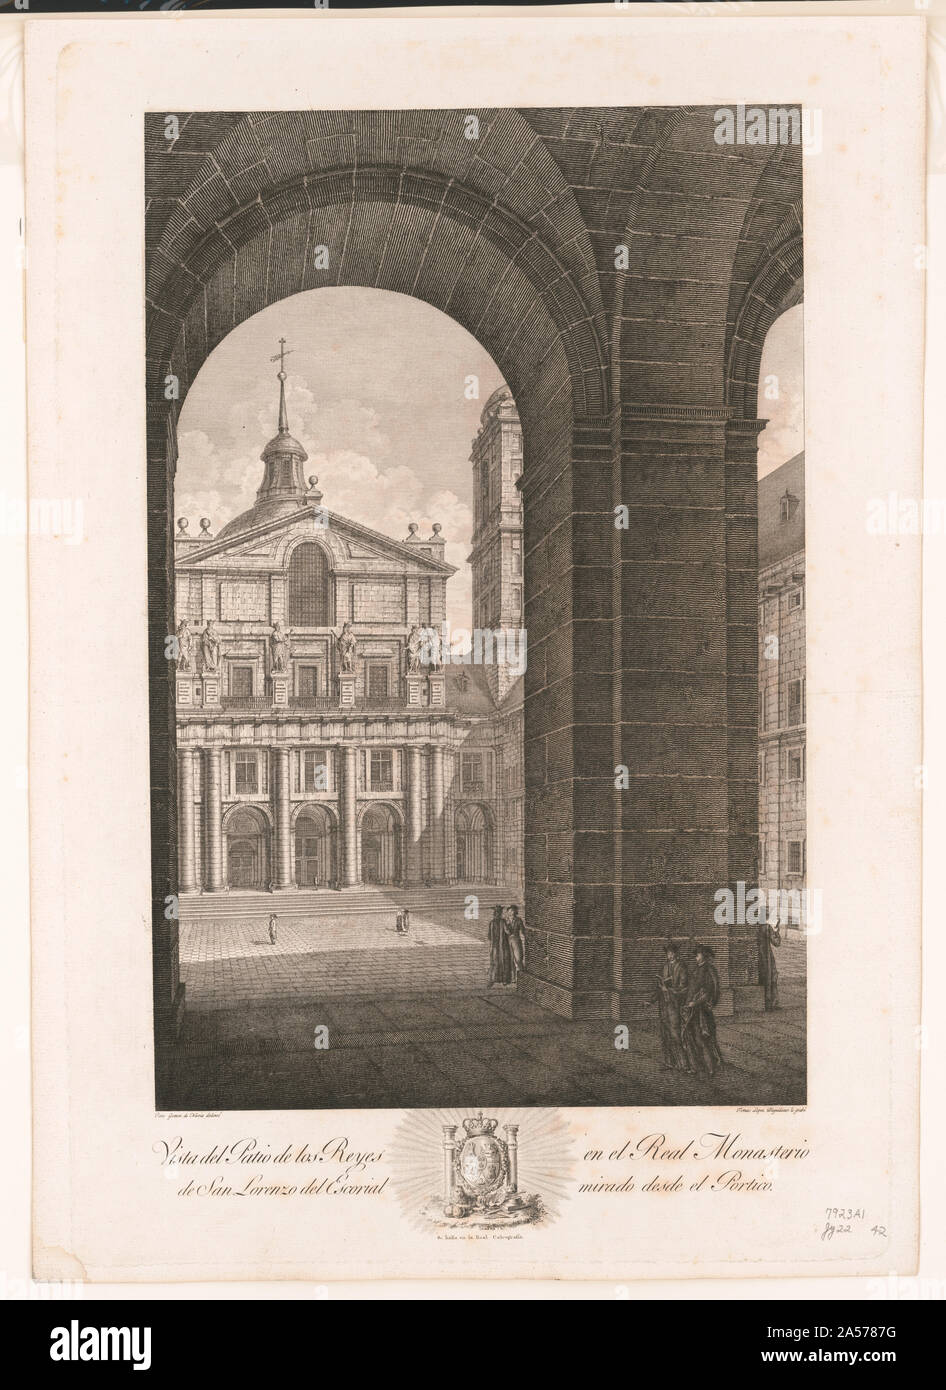 Vista del Patio de los Reyes en el Real Monasterio de San Lorenzo del Escorial mirado desde el Portico Stockfoto